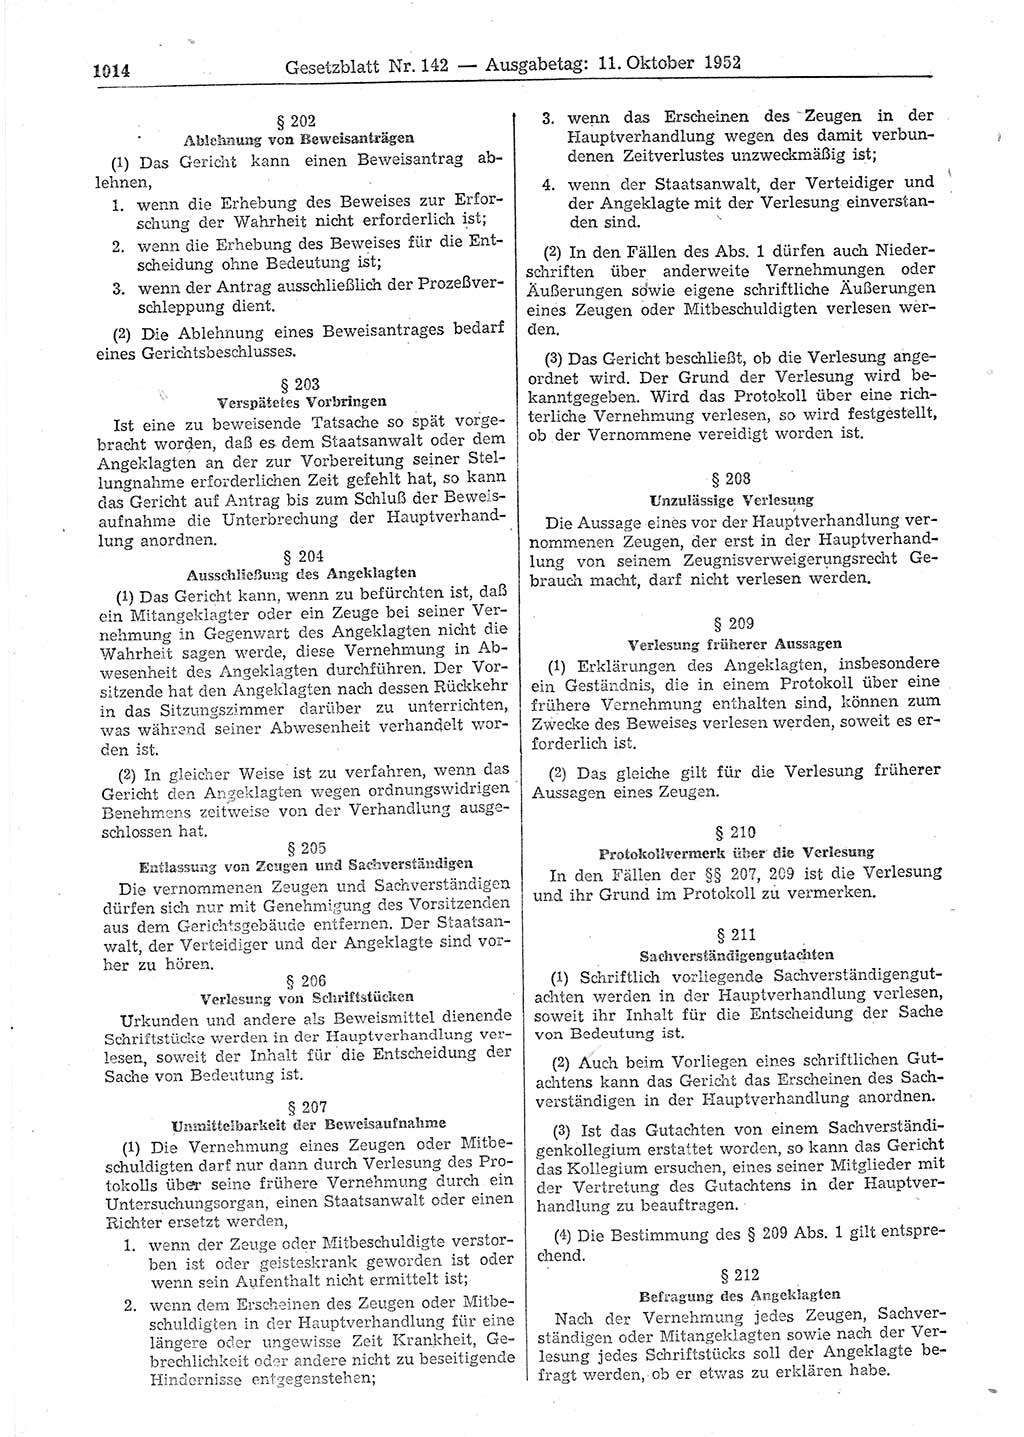 Gesetzblatt (GBl.) der Deutschen Demokratischen Republik (DDR) 1952, Seite 1014 (GBl. DDR 1952, S. 1014)